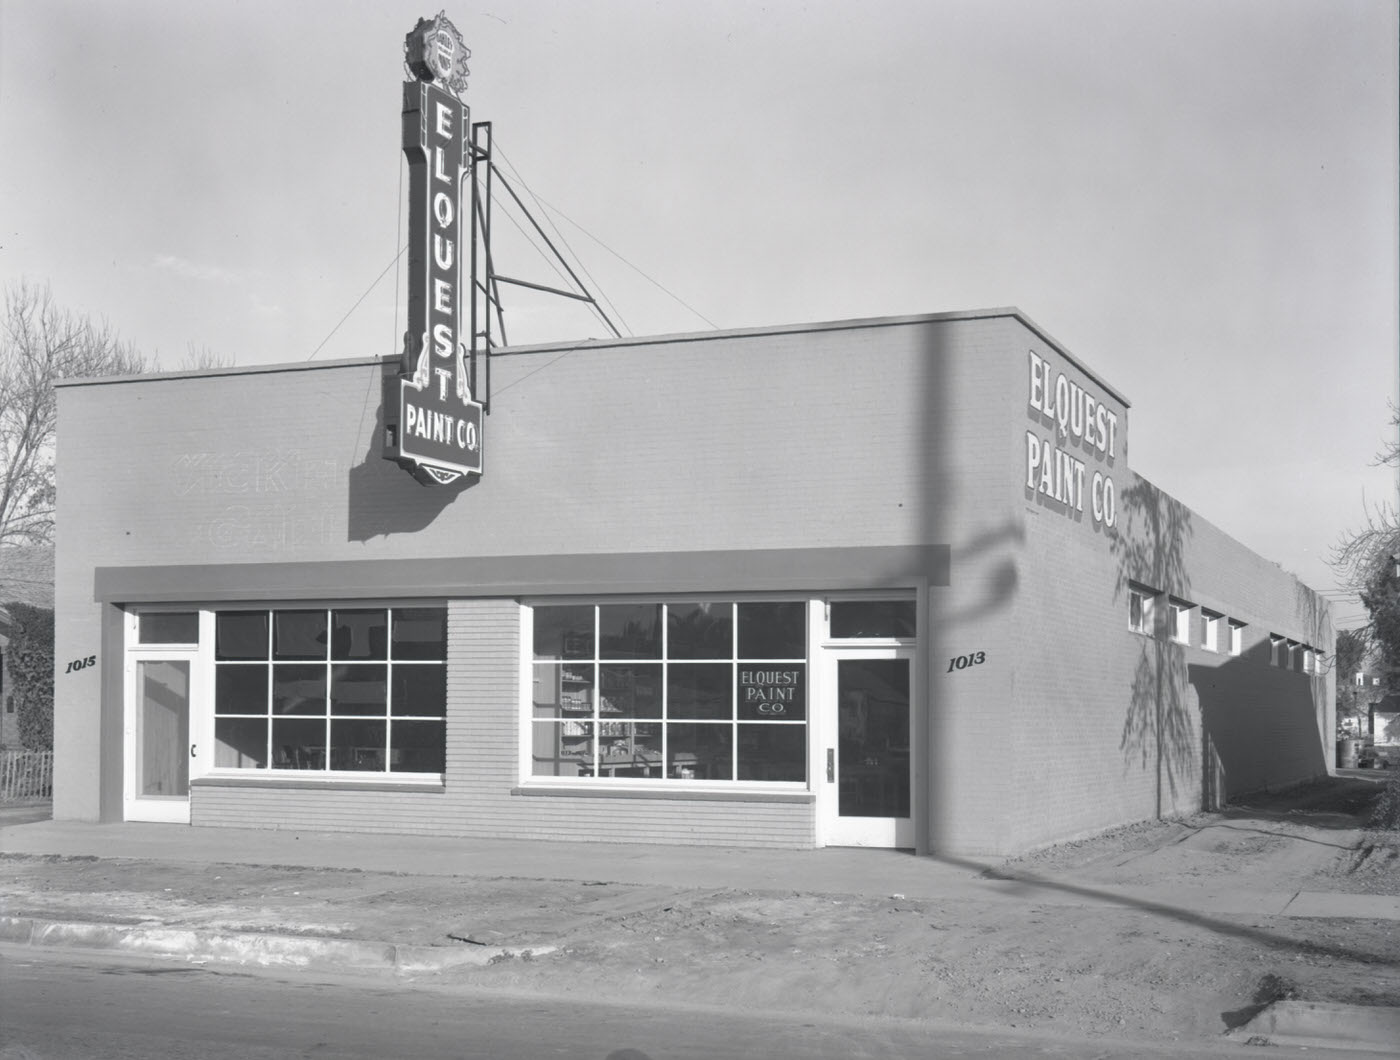 Elquest Paint Co. Building Exterior, 1945